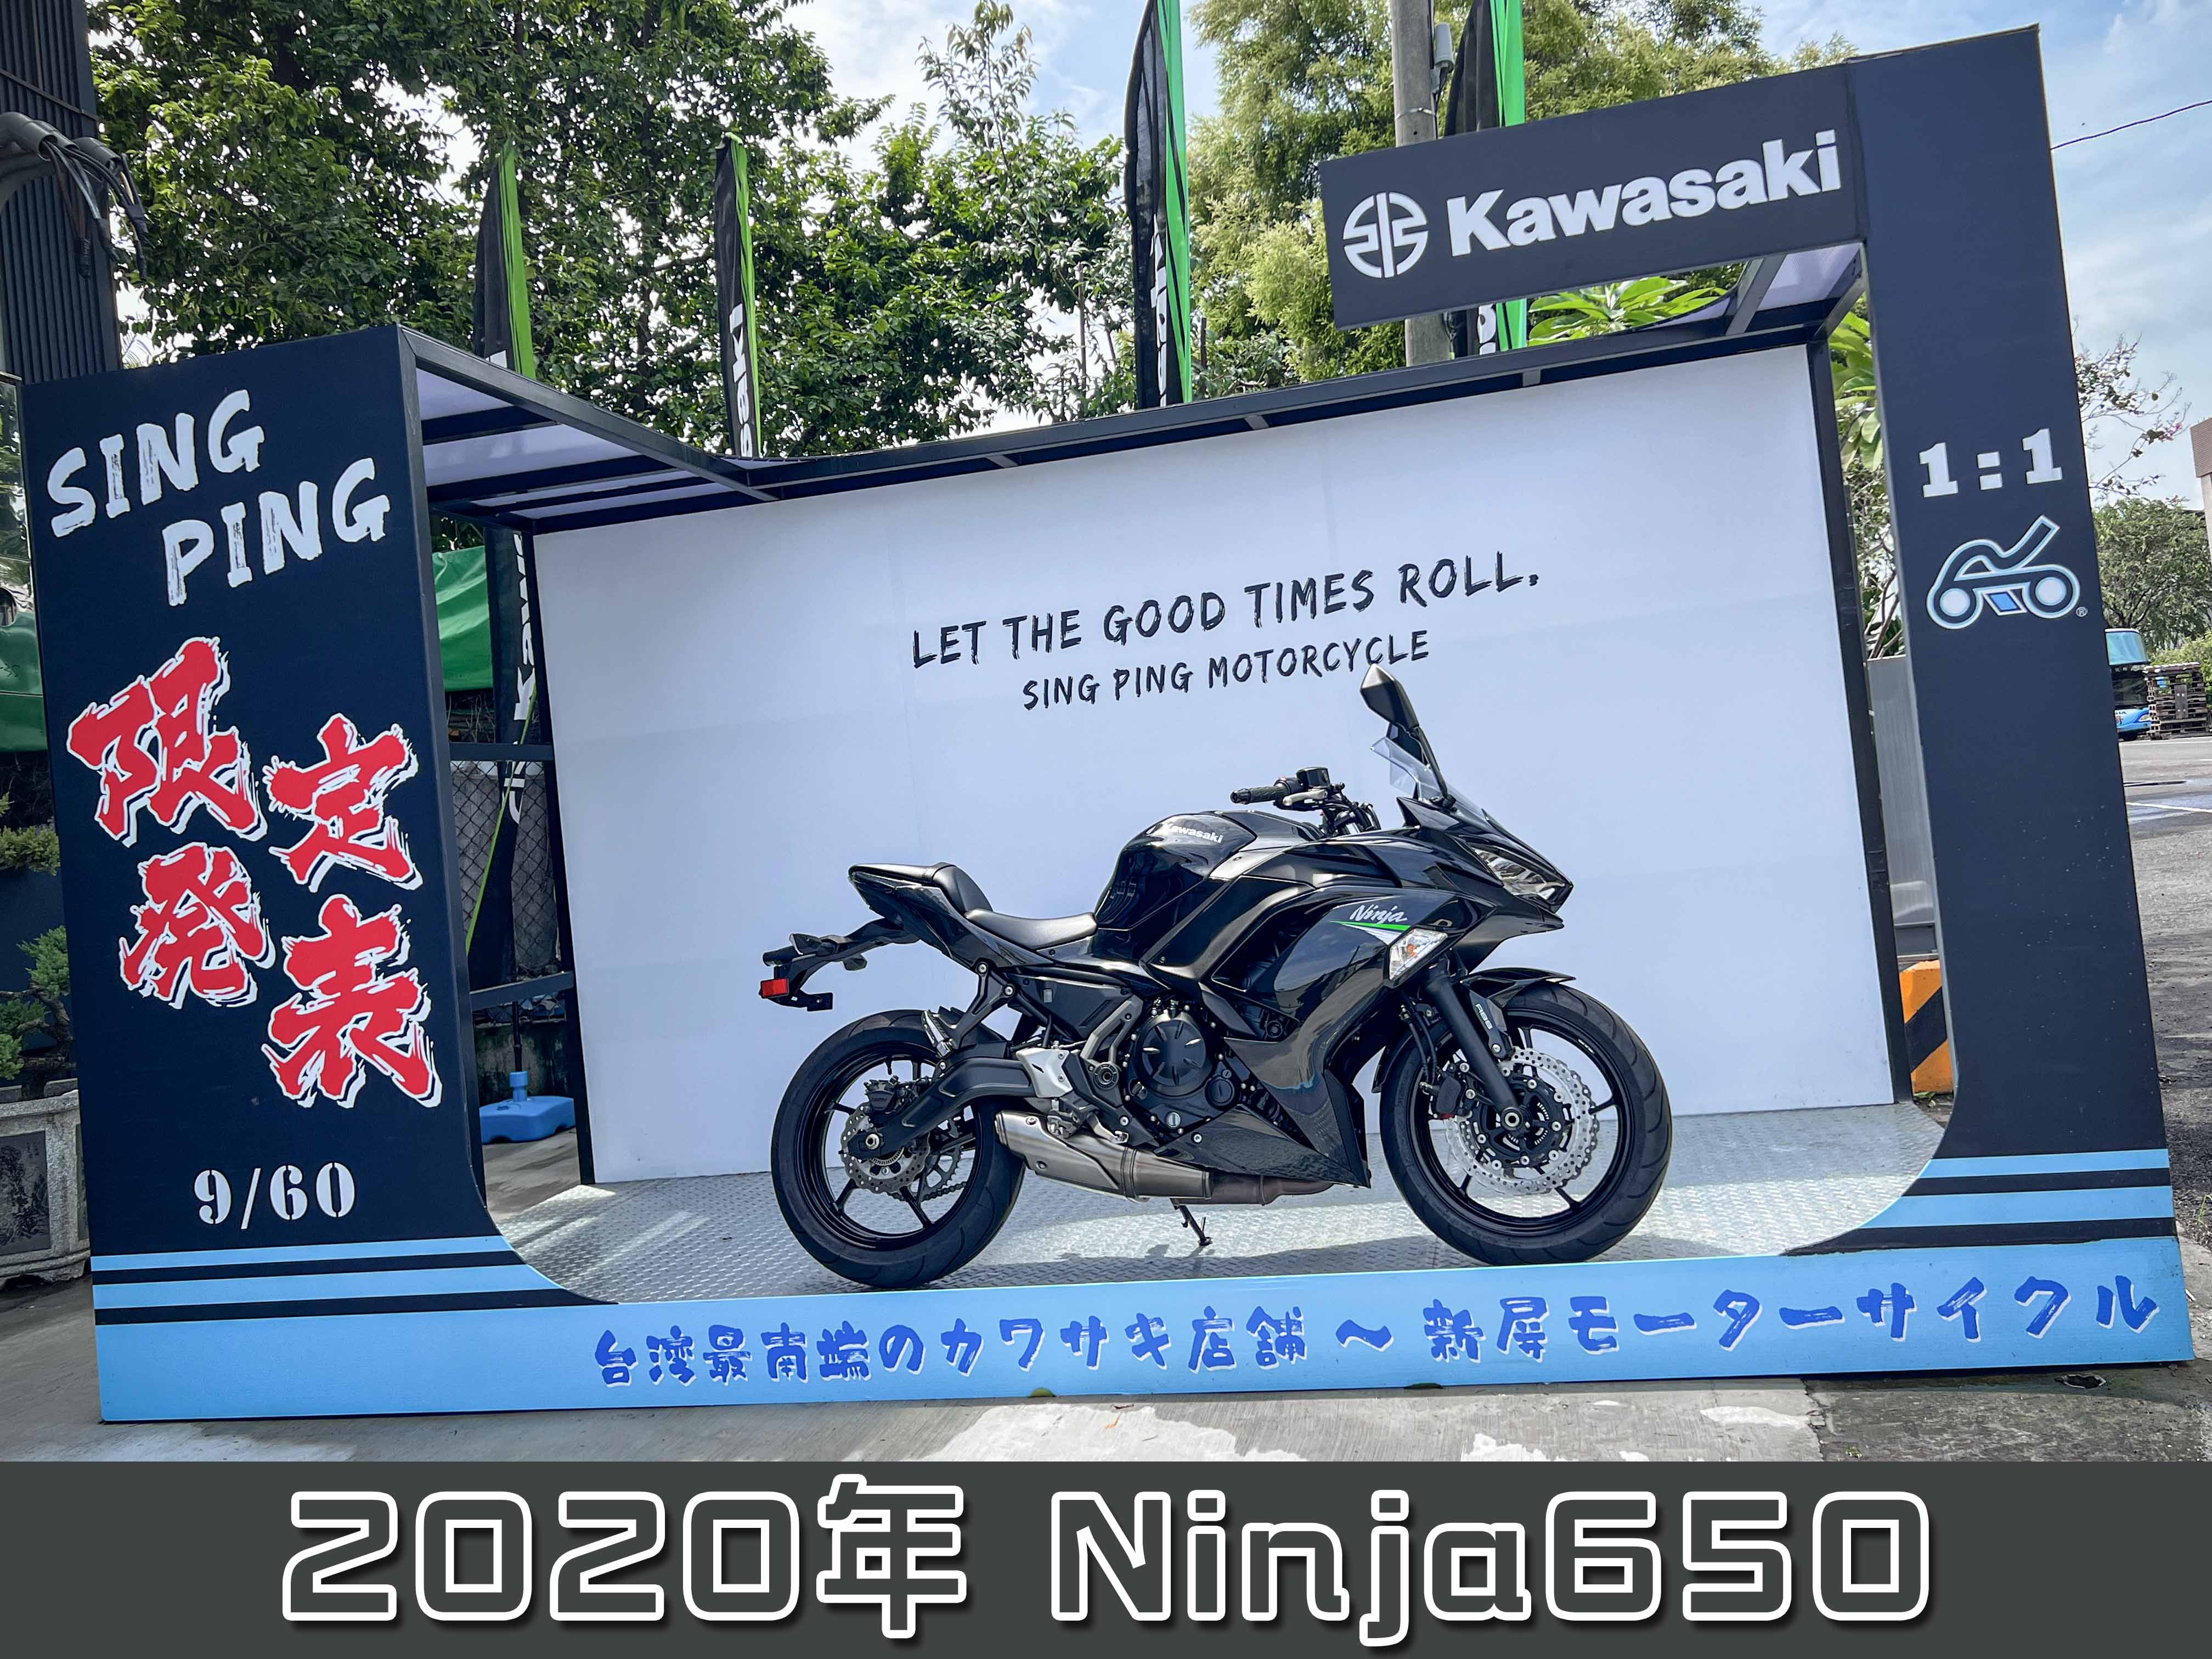 KAWASAKI NINJA650 - 中古/二手車出售中 【售】KAWASAKI總代理 2020 Ninja650 武士黑 | 新屏摩托有限公司